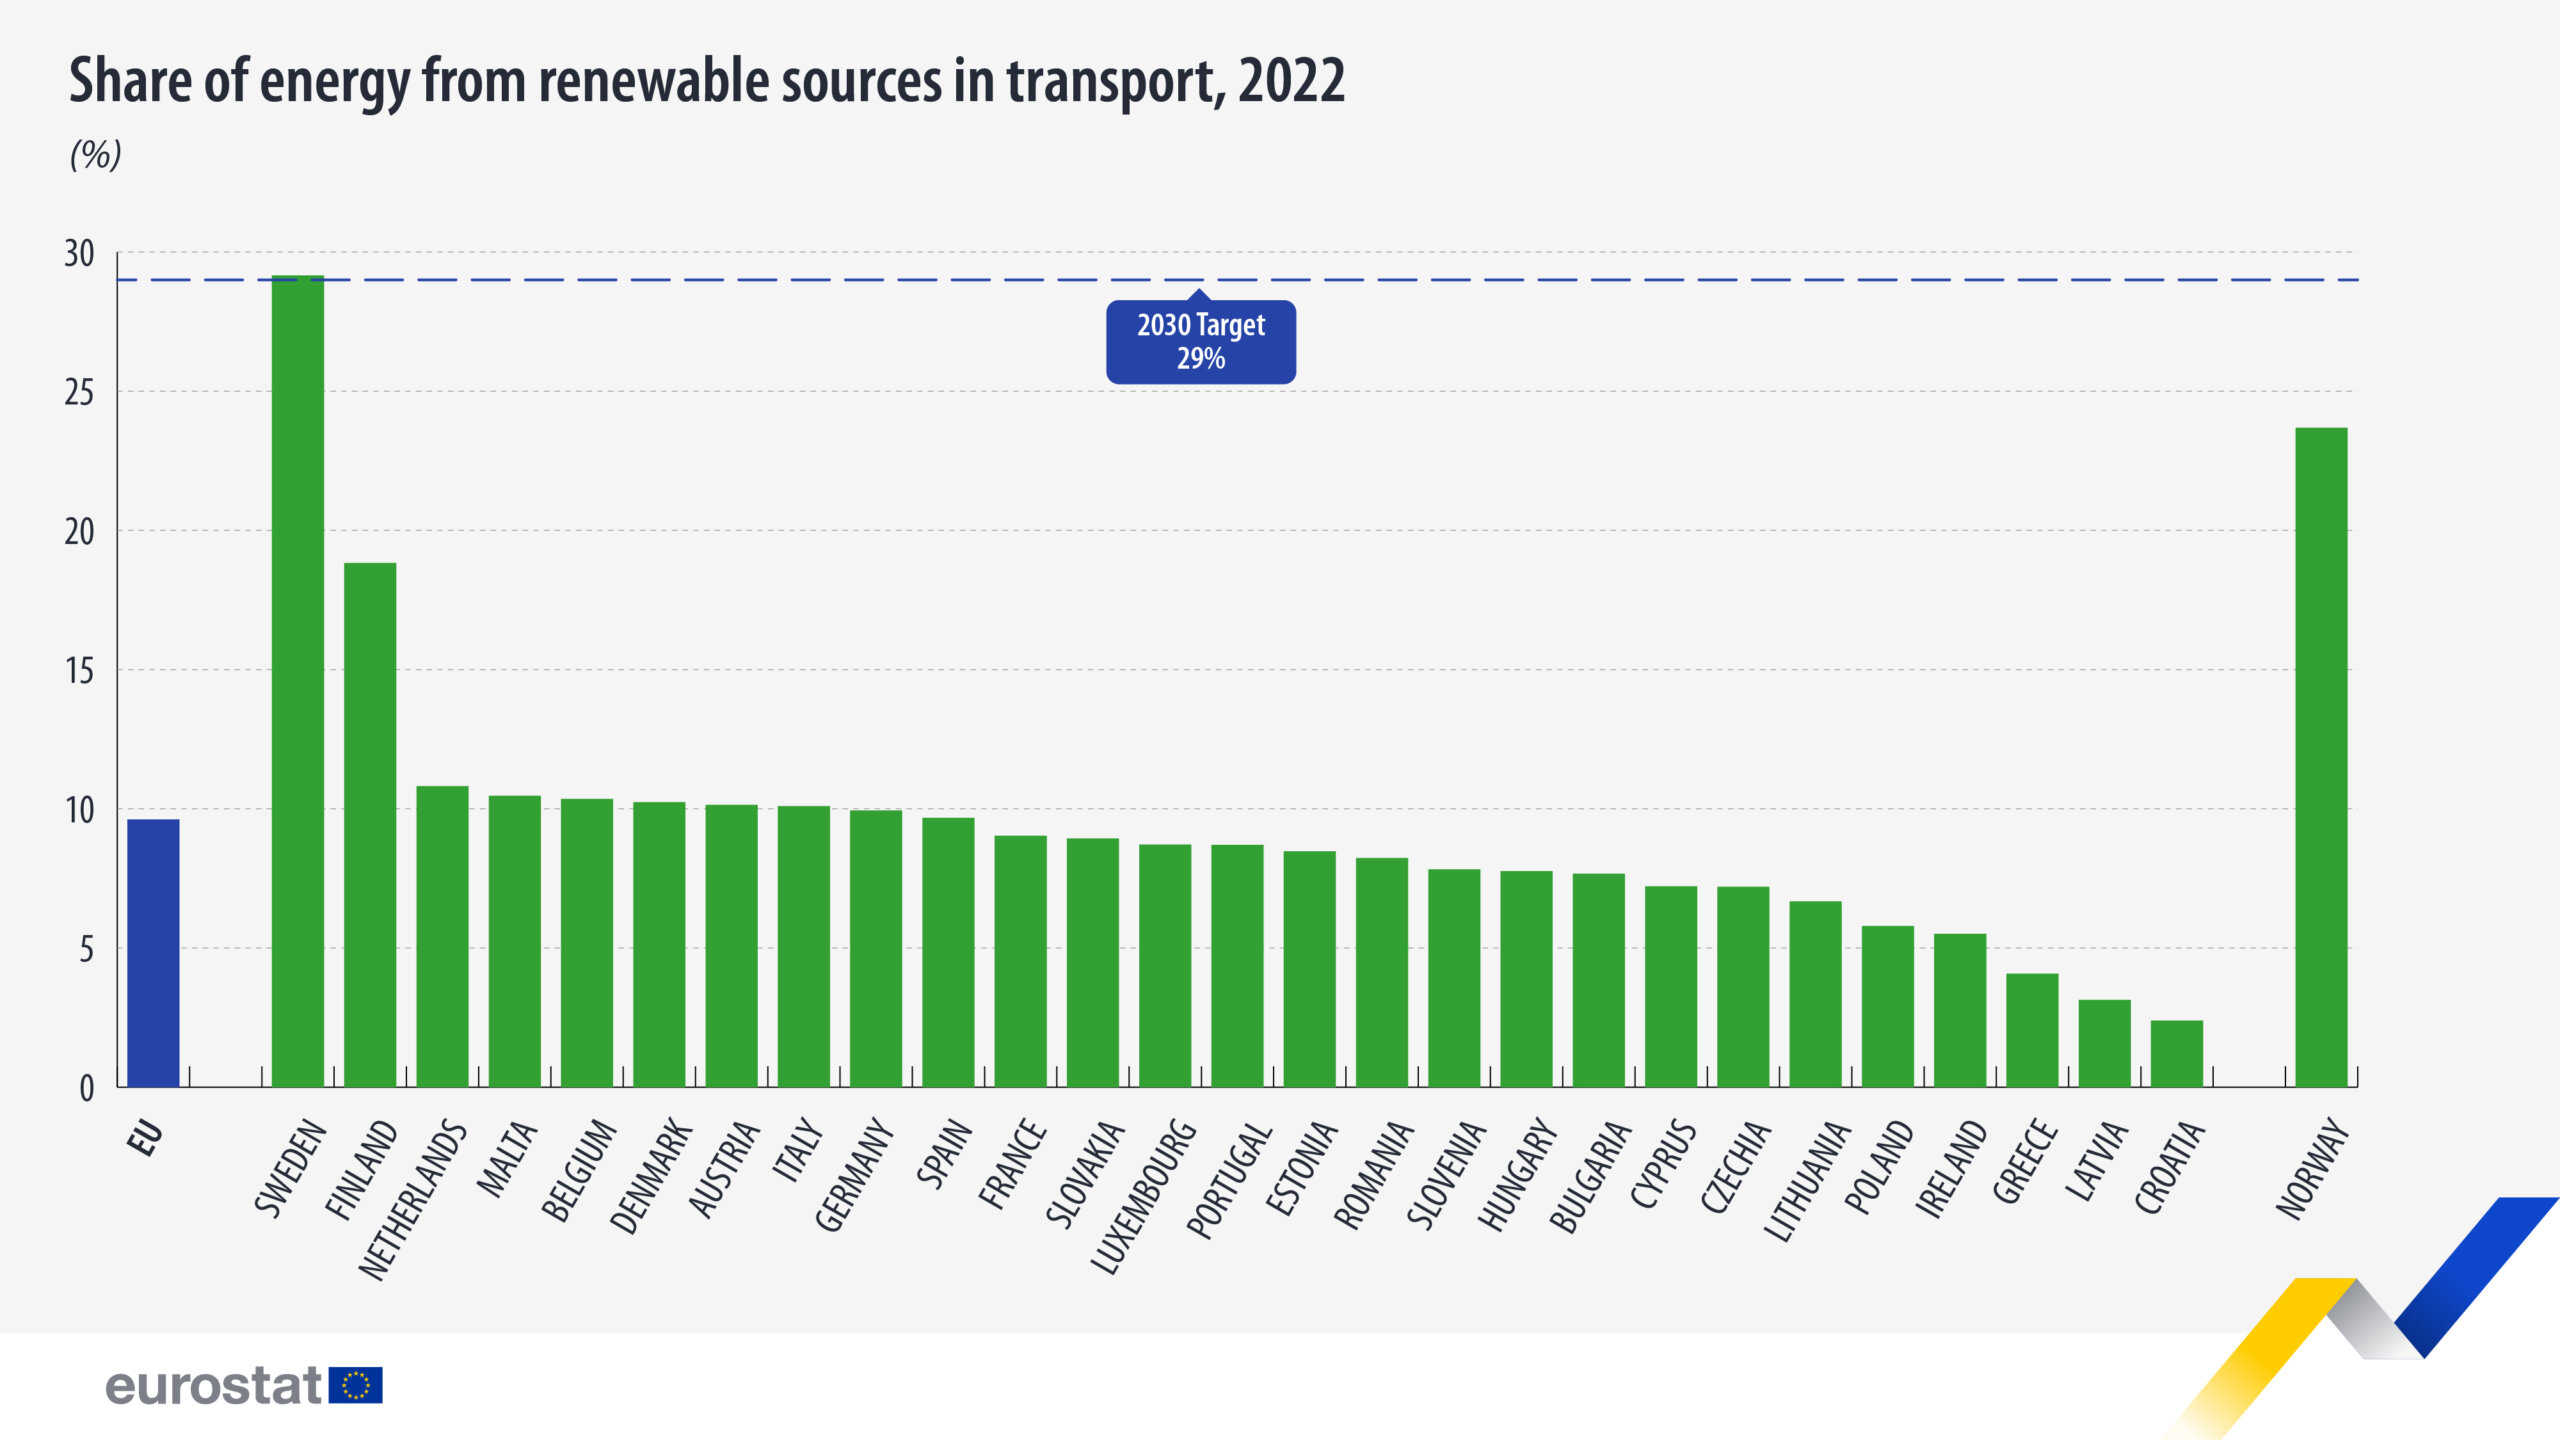 Švedska prednjači po udelu obnovljivih izvora energije u saobraćaju 2